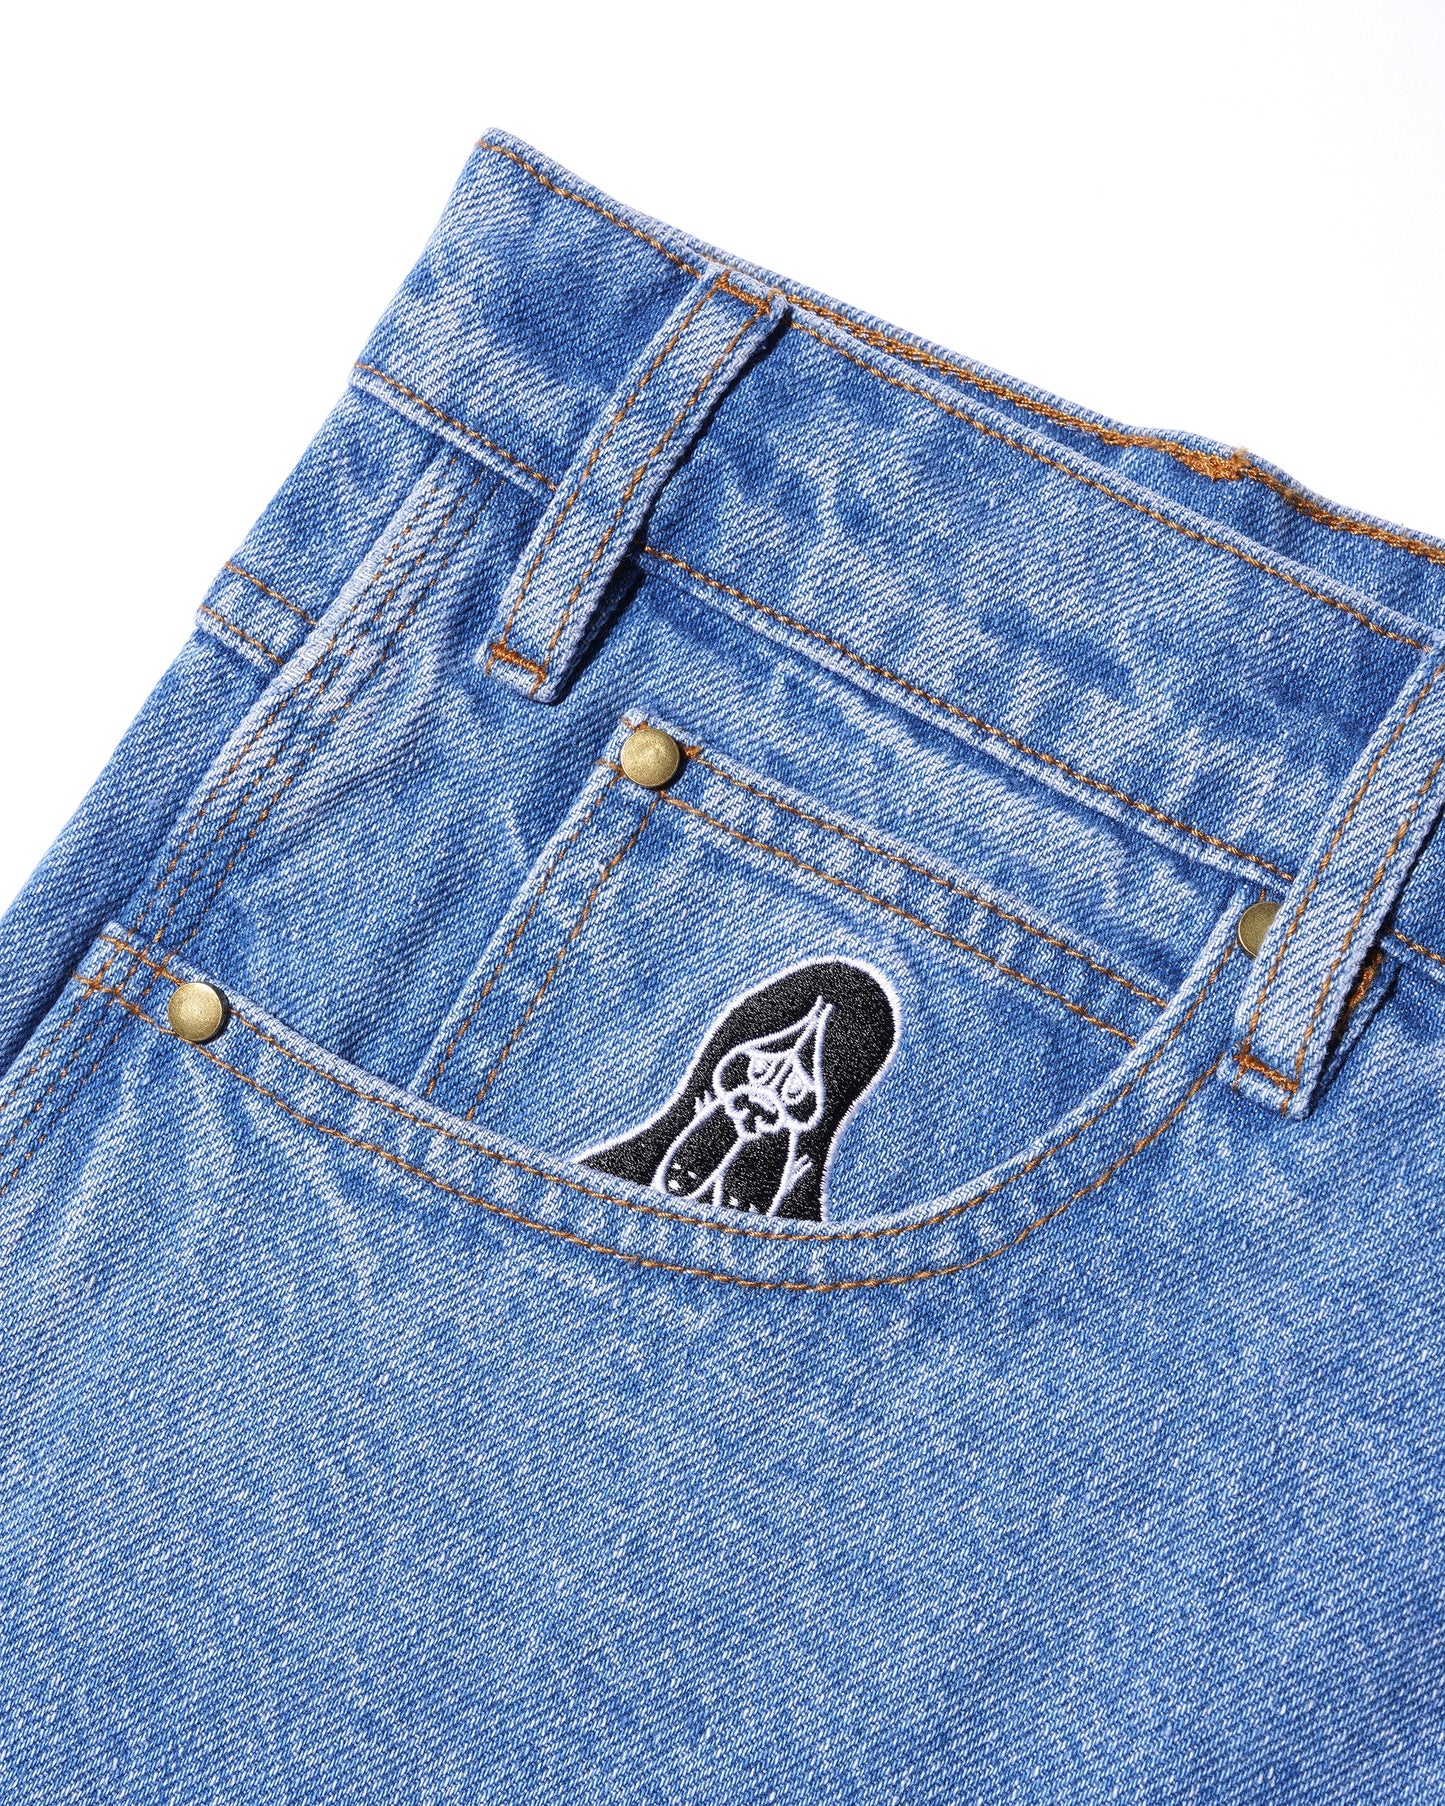 Hound Denim Jeans